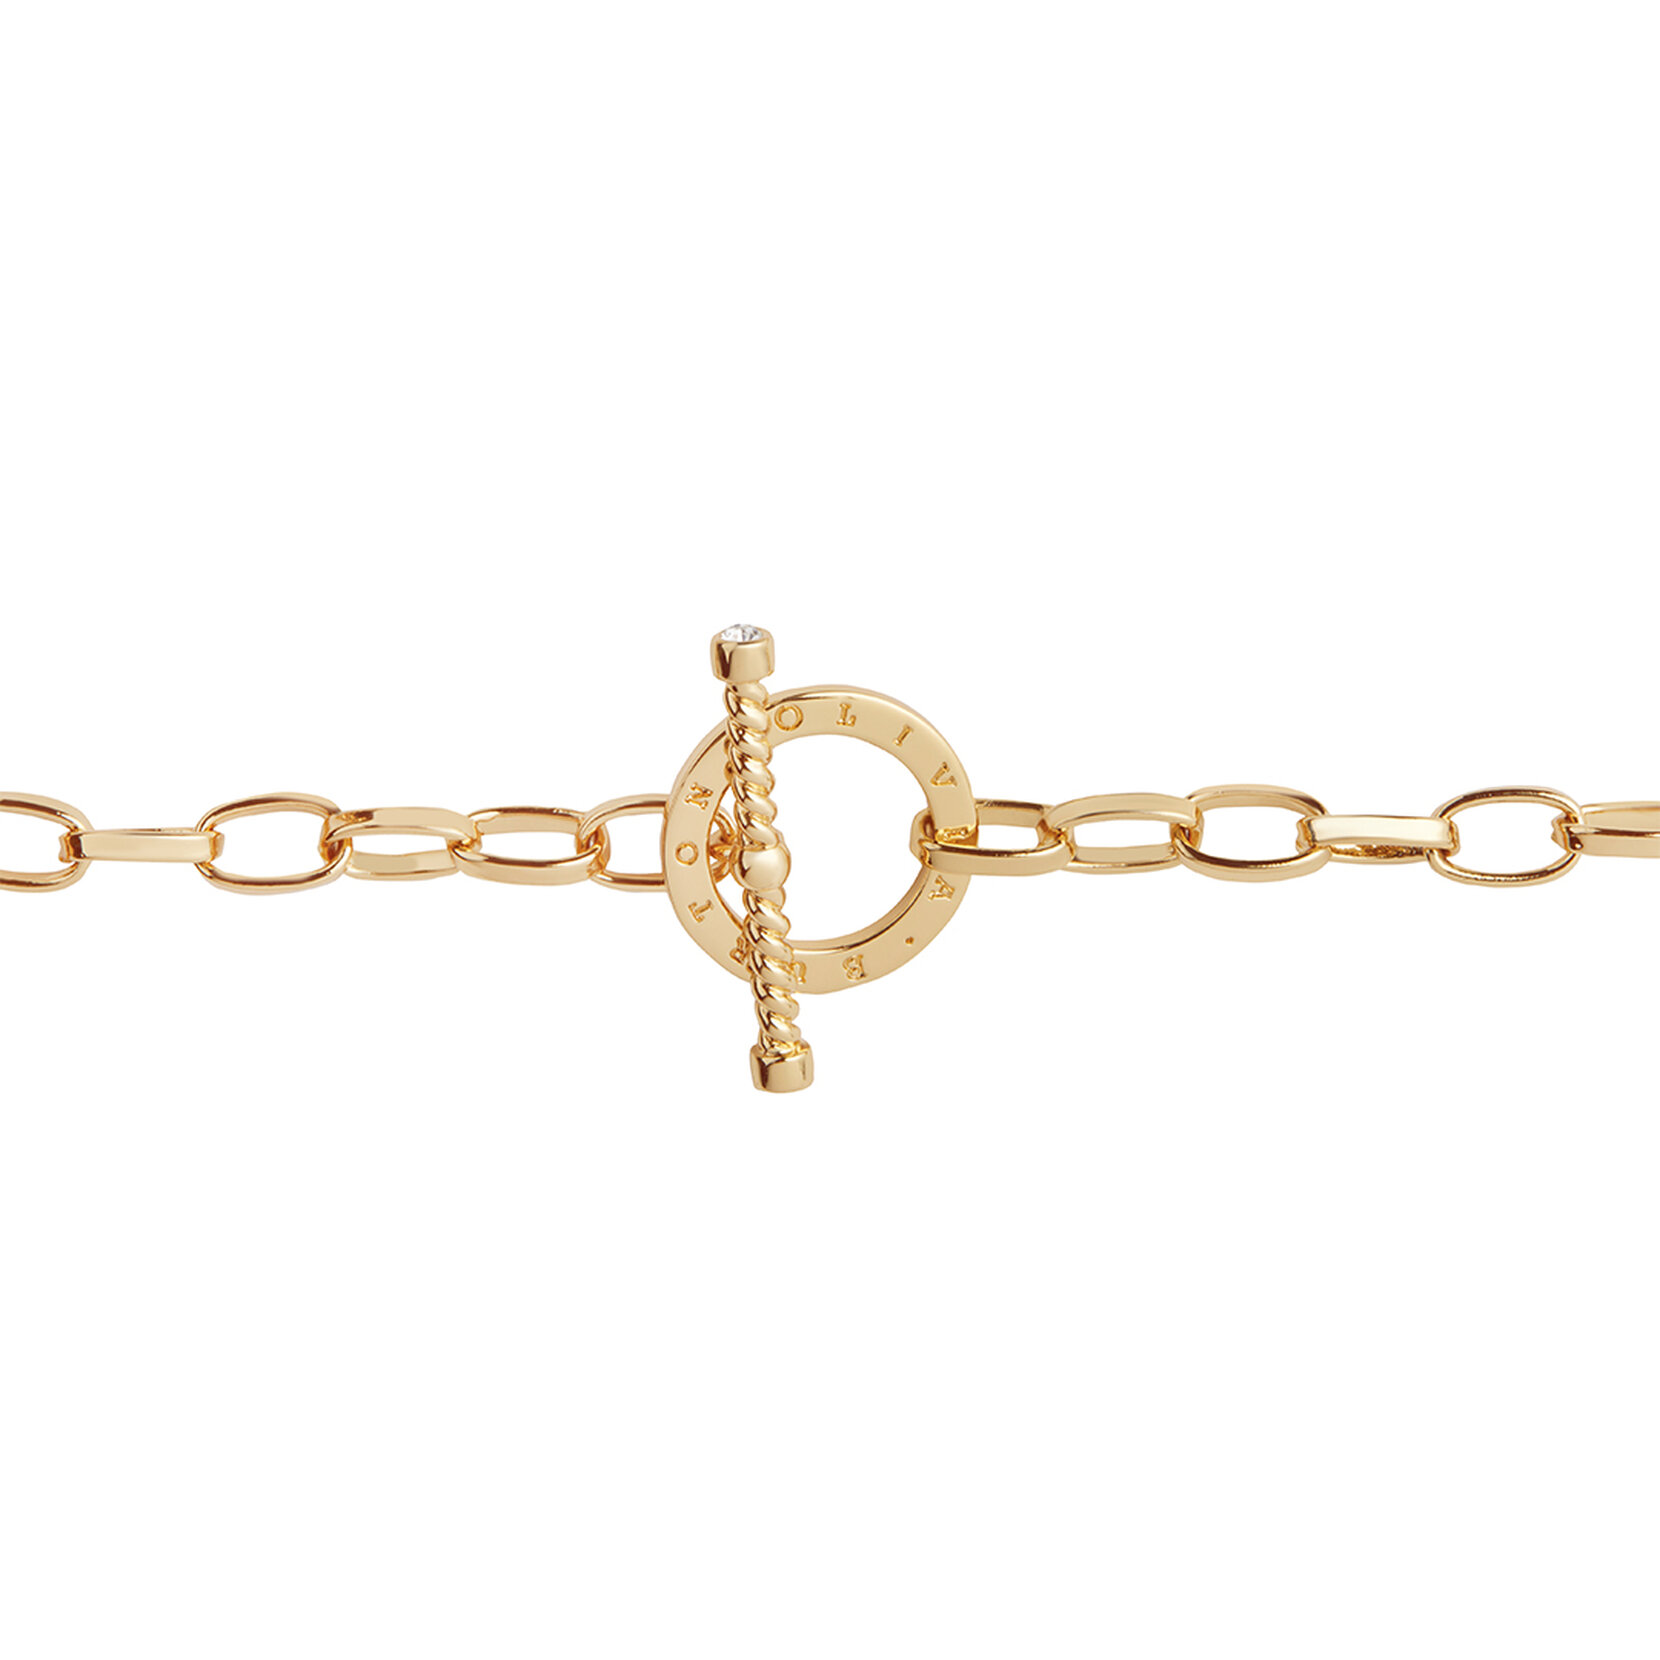 Bejewelled T-Bar Bracelet Gold